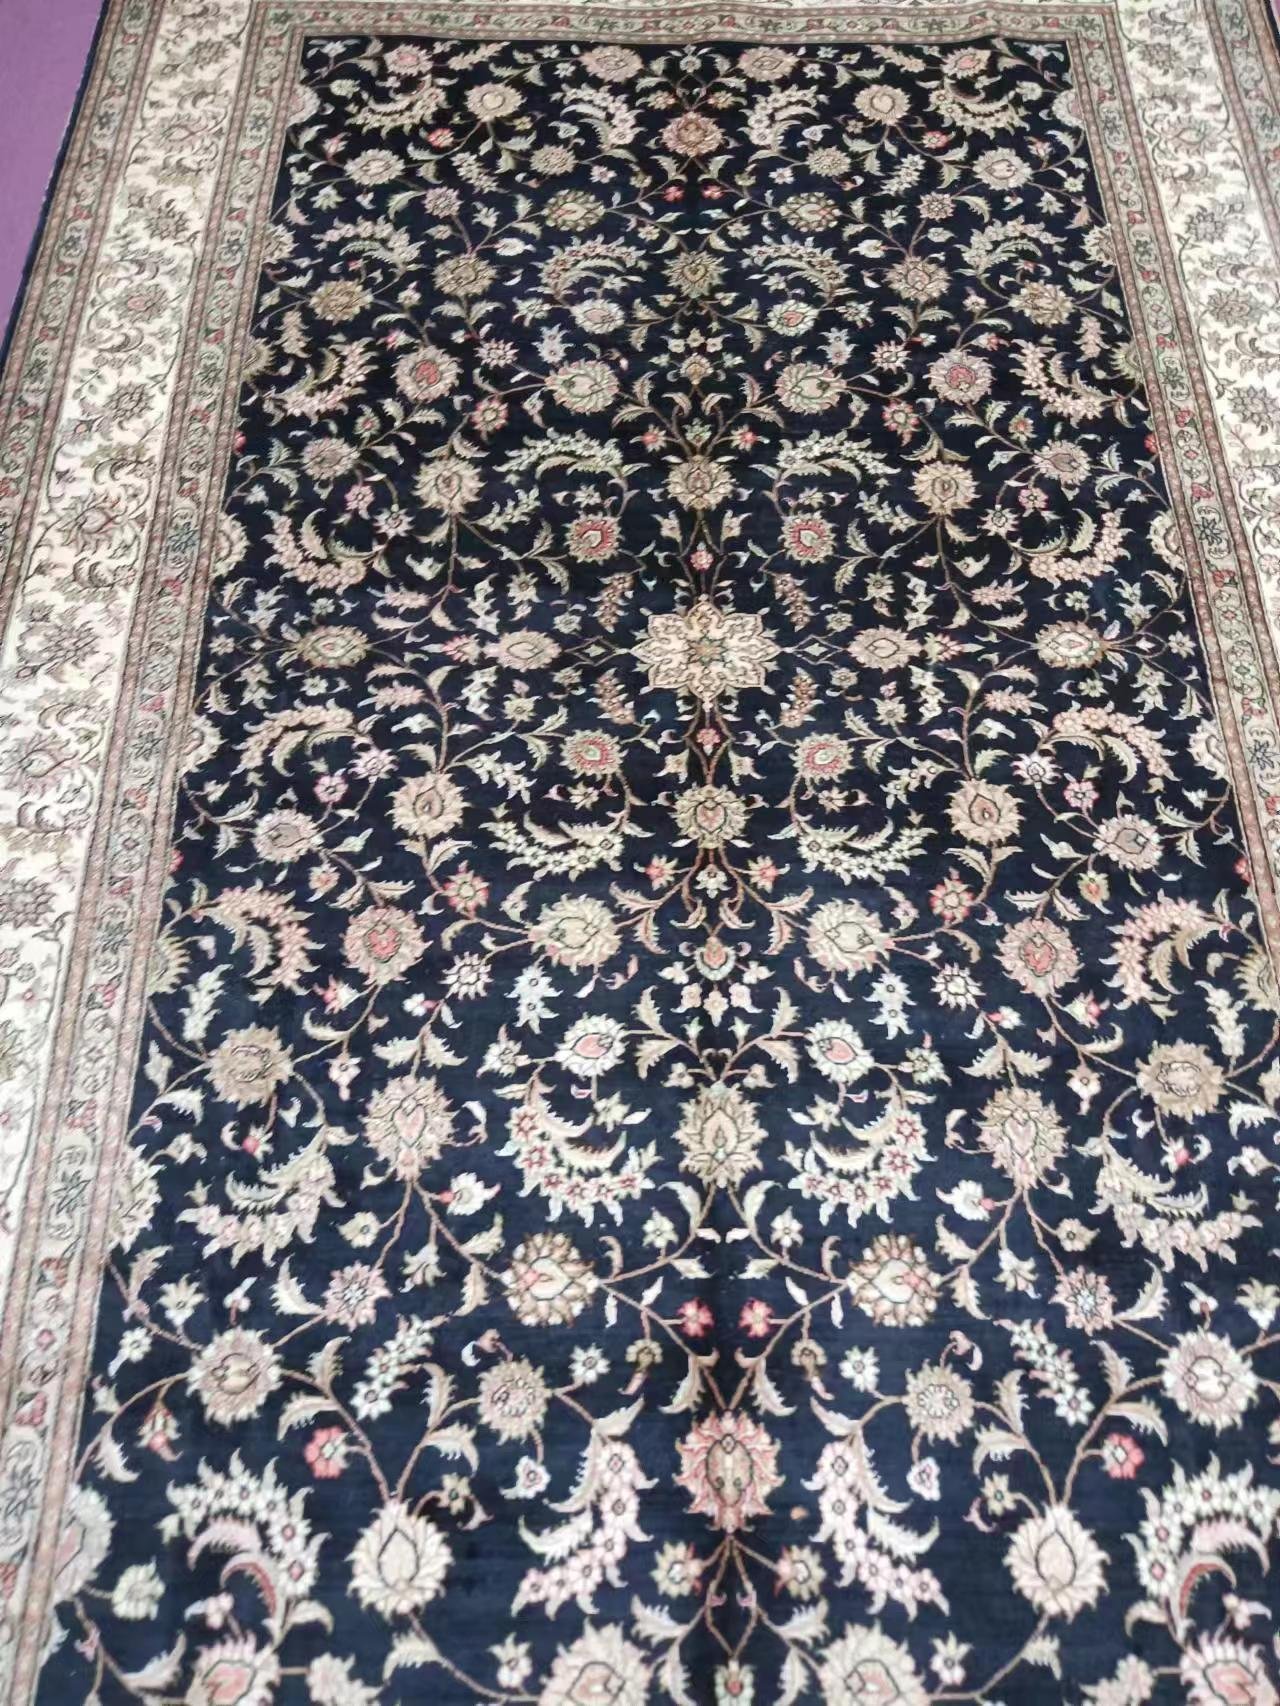 6x9ft 藍色歐式高檔奢華手工真絲藝朮客廳房間地毯 4